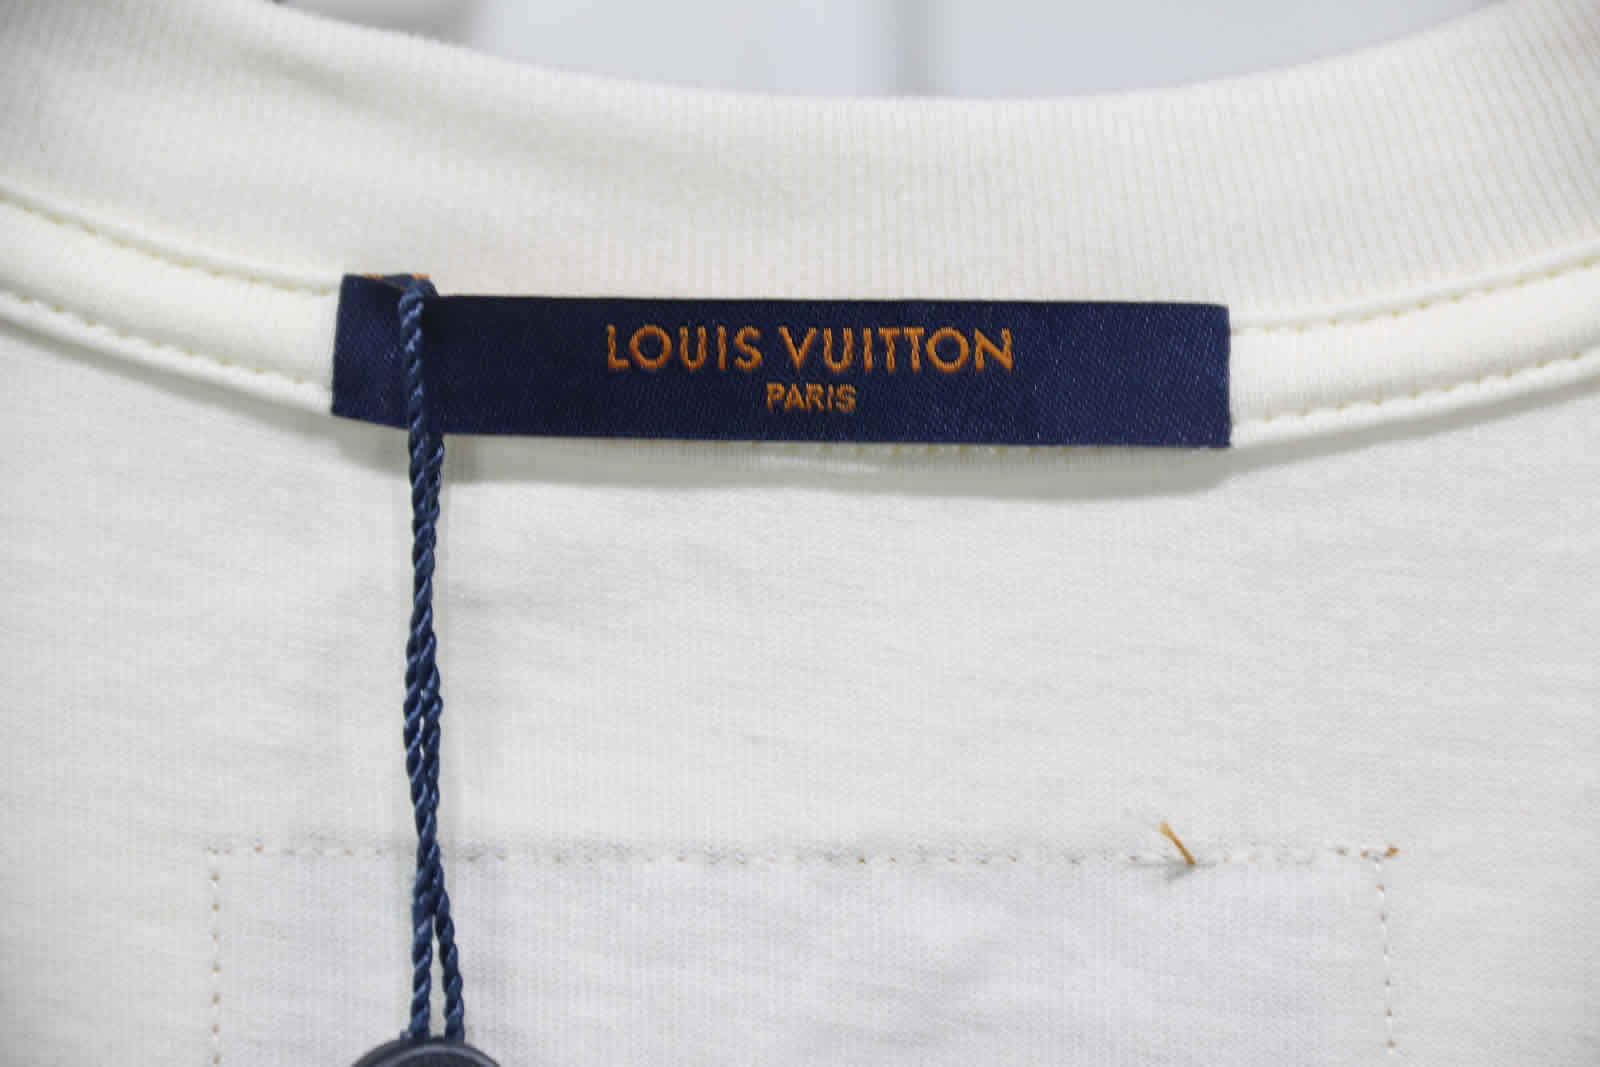 Louis Vuitton Catwalk T Shirt 2021 26 - www.kickbulk.org